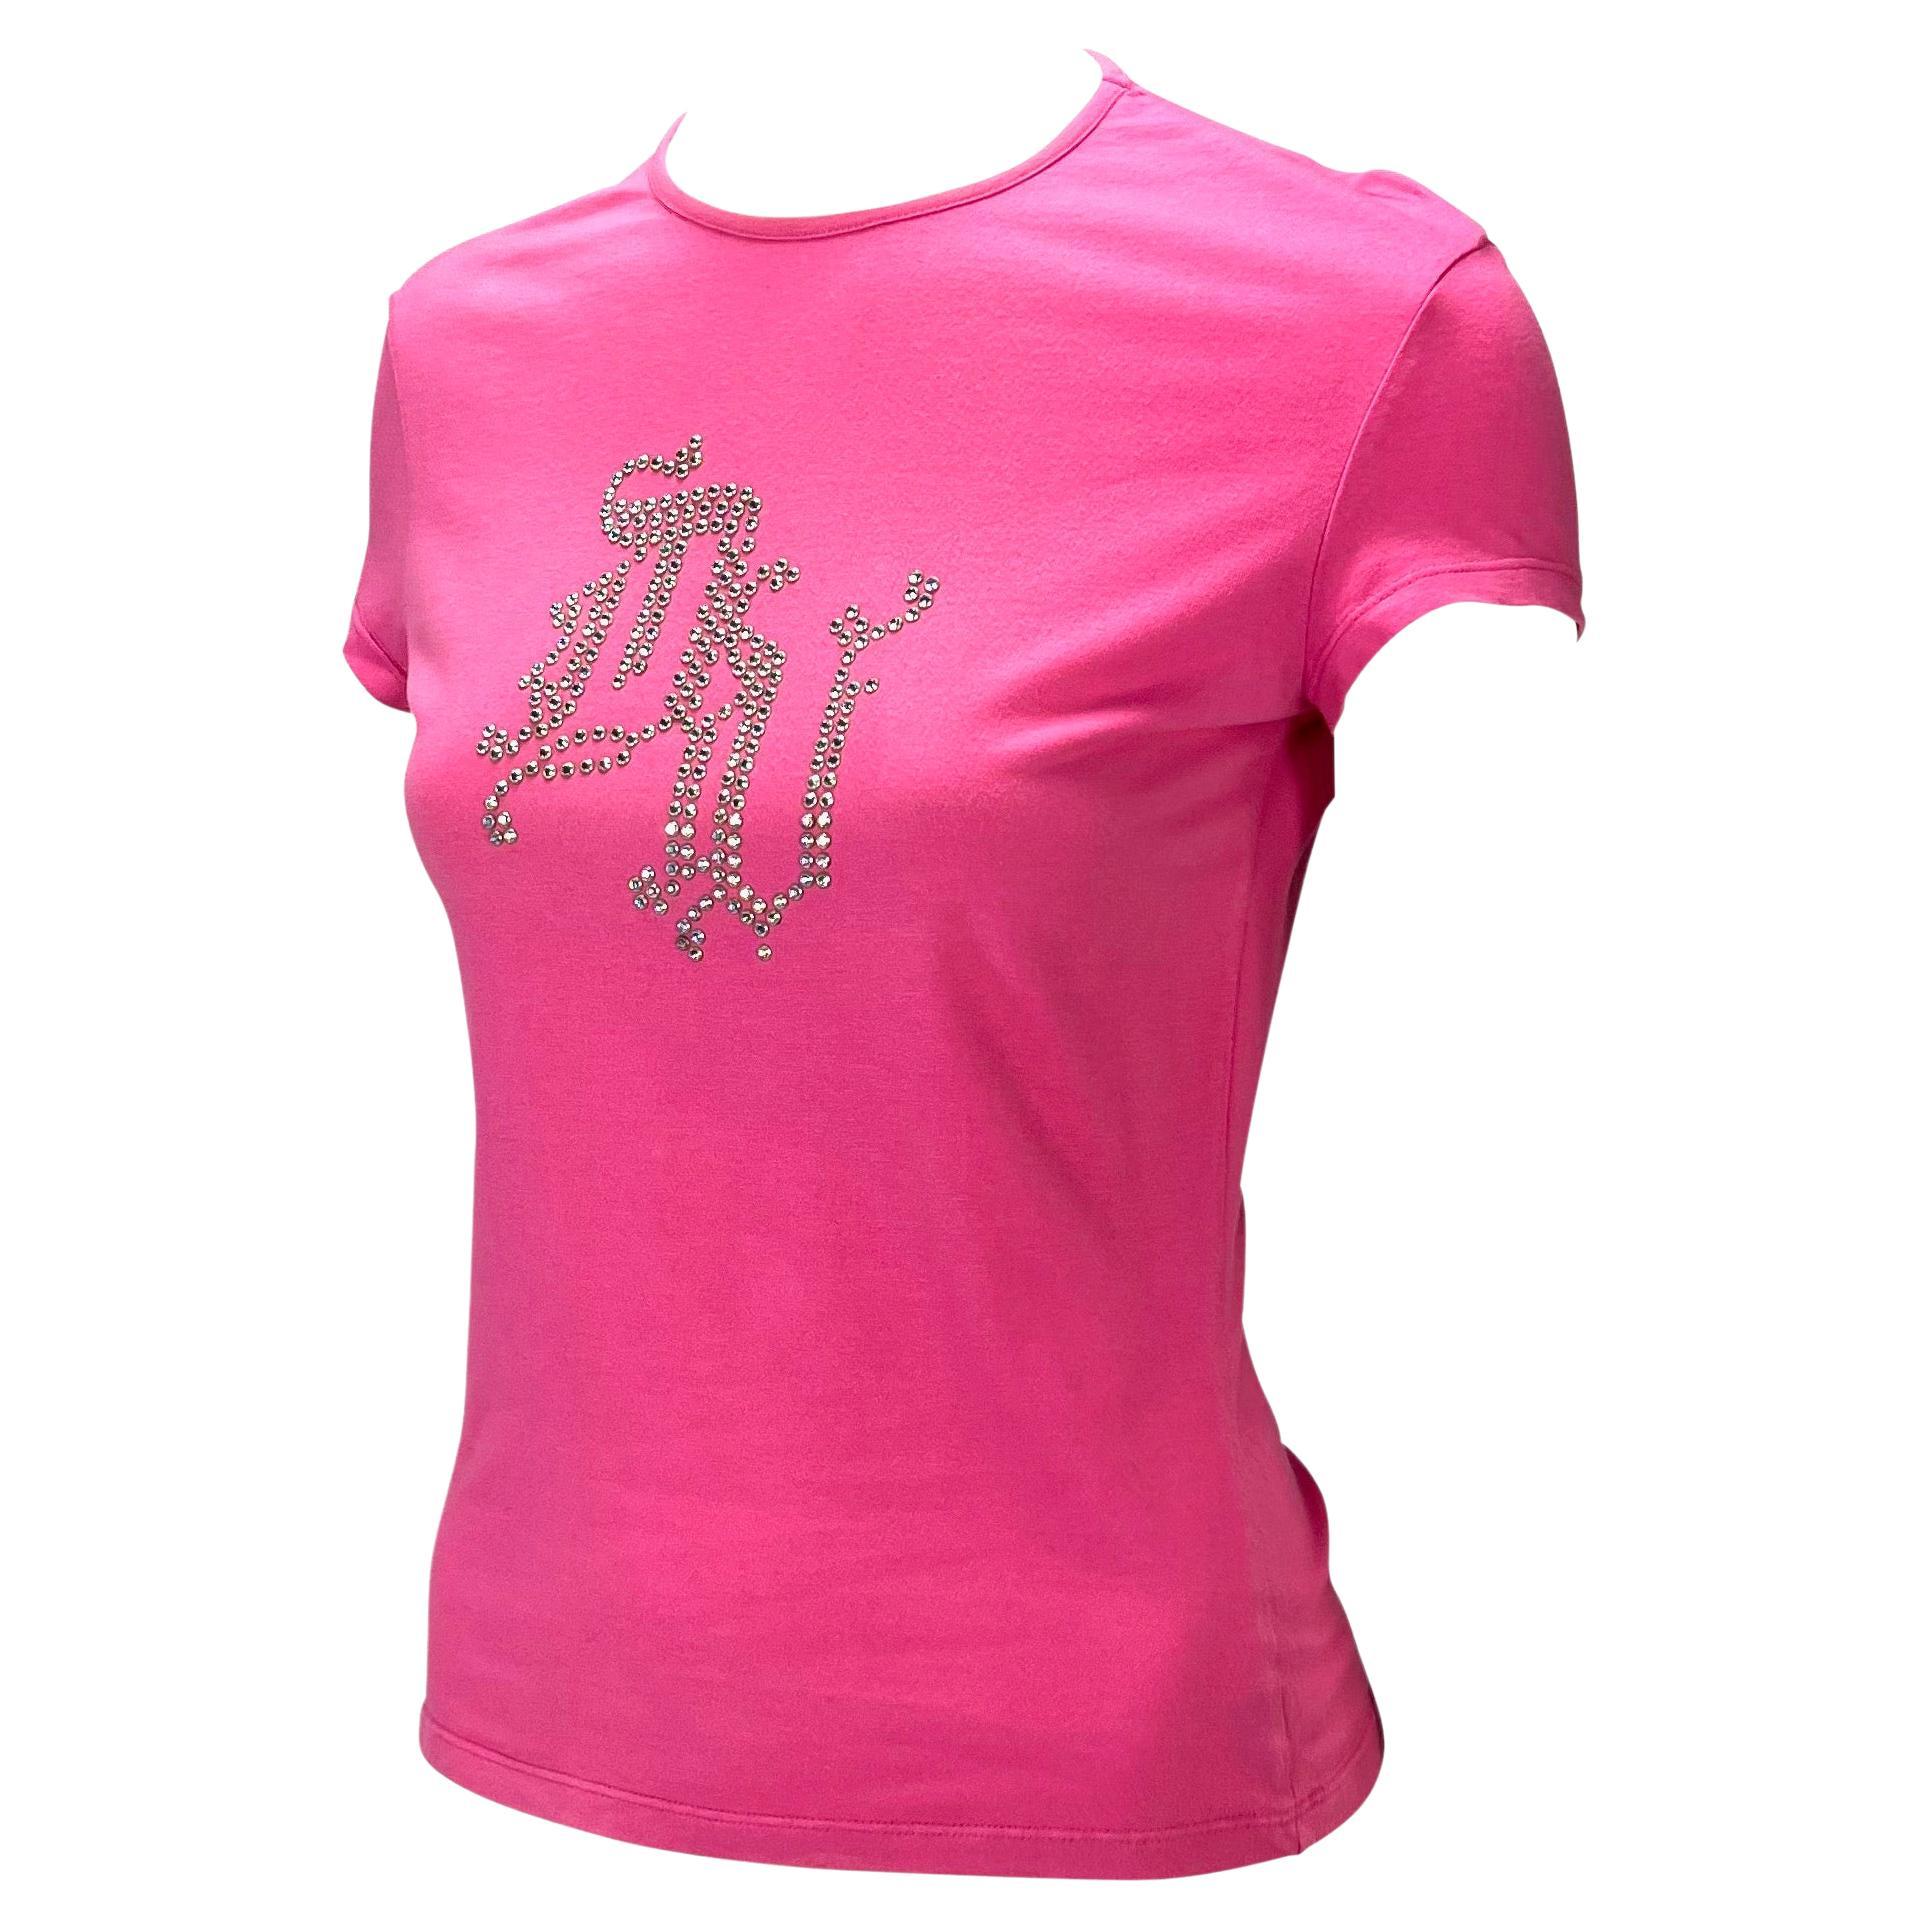 Wir präsentieren ein rosa Versace-T-Shirt, das Donatella Anfang der 2000er Jahre entworfen hat. Die Büste ist mit Strasssteinen bestickt, die das Monogram von Donatella DV bilden. Dieses Stück ist eine fabelhafte Darstellung von Donatellas